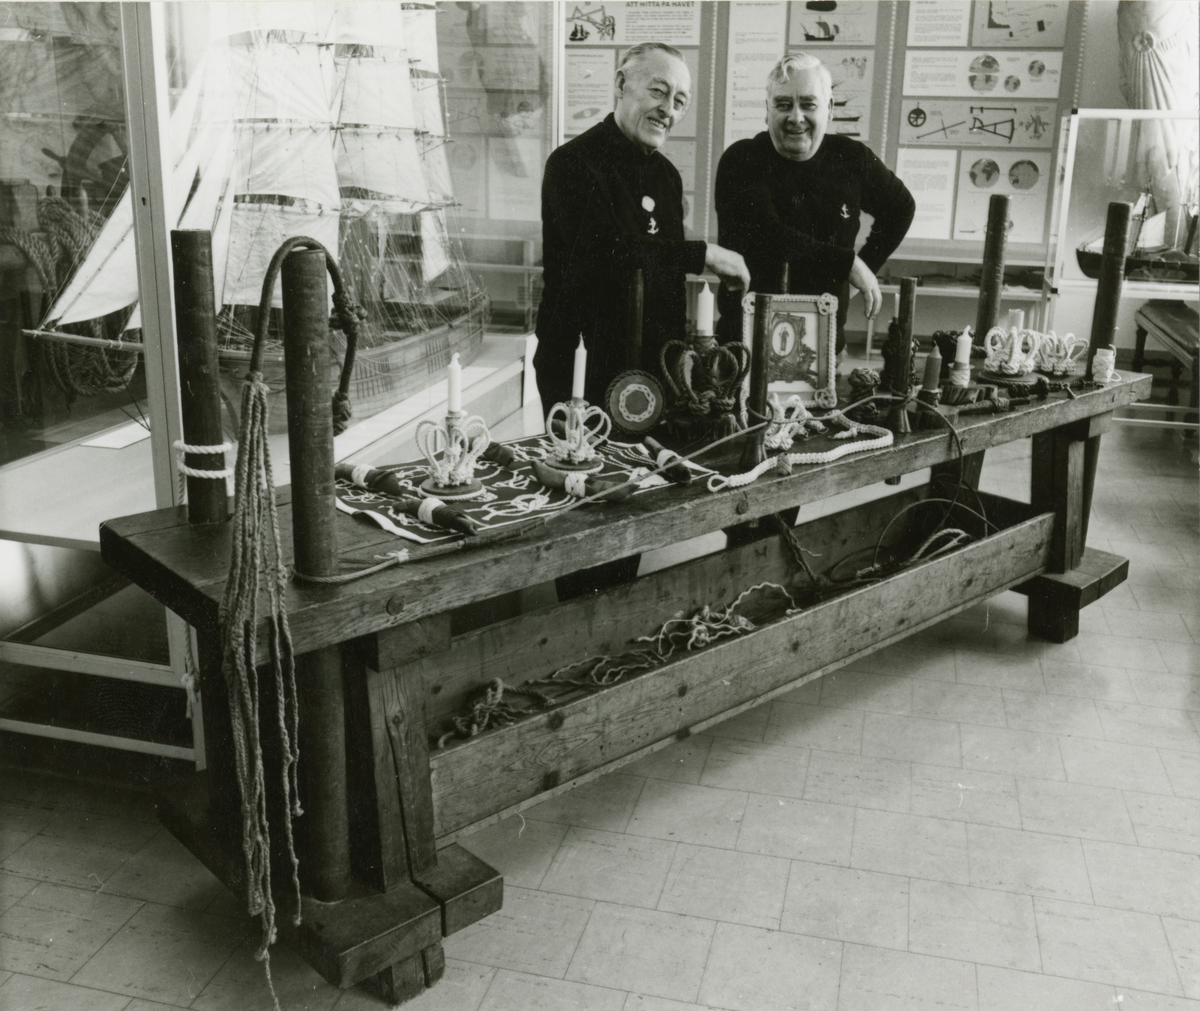 Utställning. Förre detta skeppsgossarna Harald Wermelin och Otto Hult vid riggarbänken i Matsrummet på Sjöhistoriska museet. De visar prov på sitt arbete med tågvirke. Demonstration av repslagning. Tillverkning av både rep och bruksföremål.